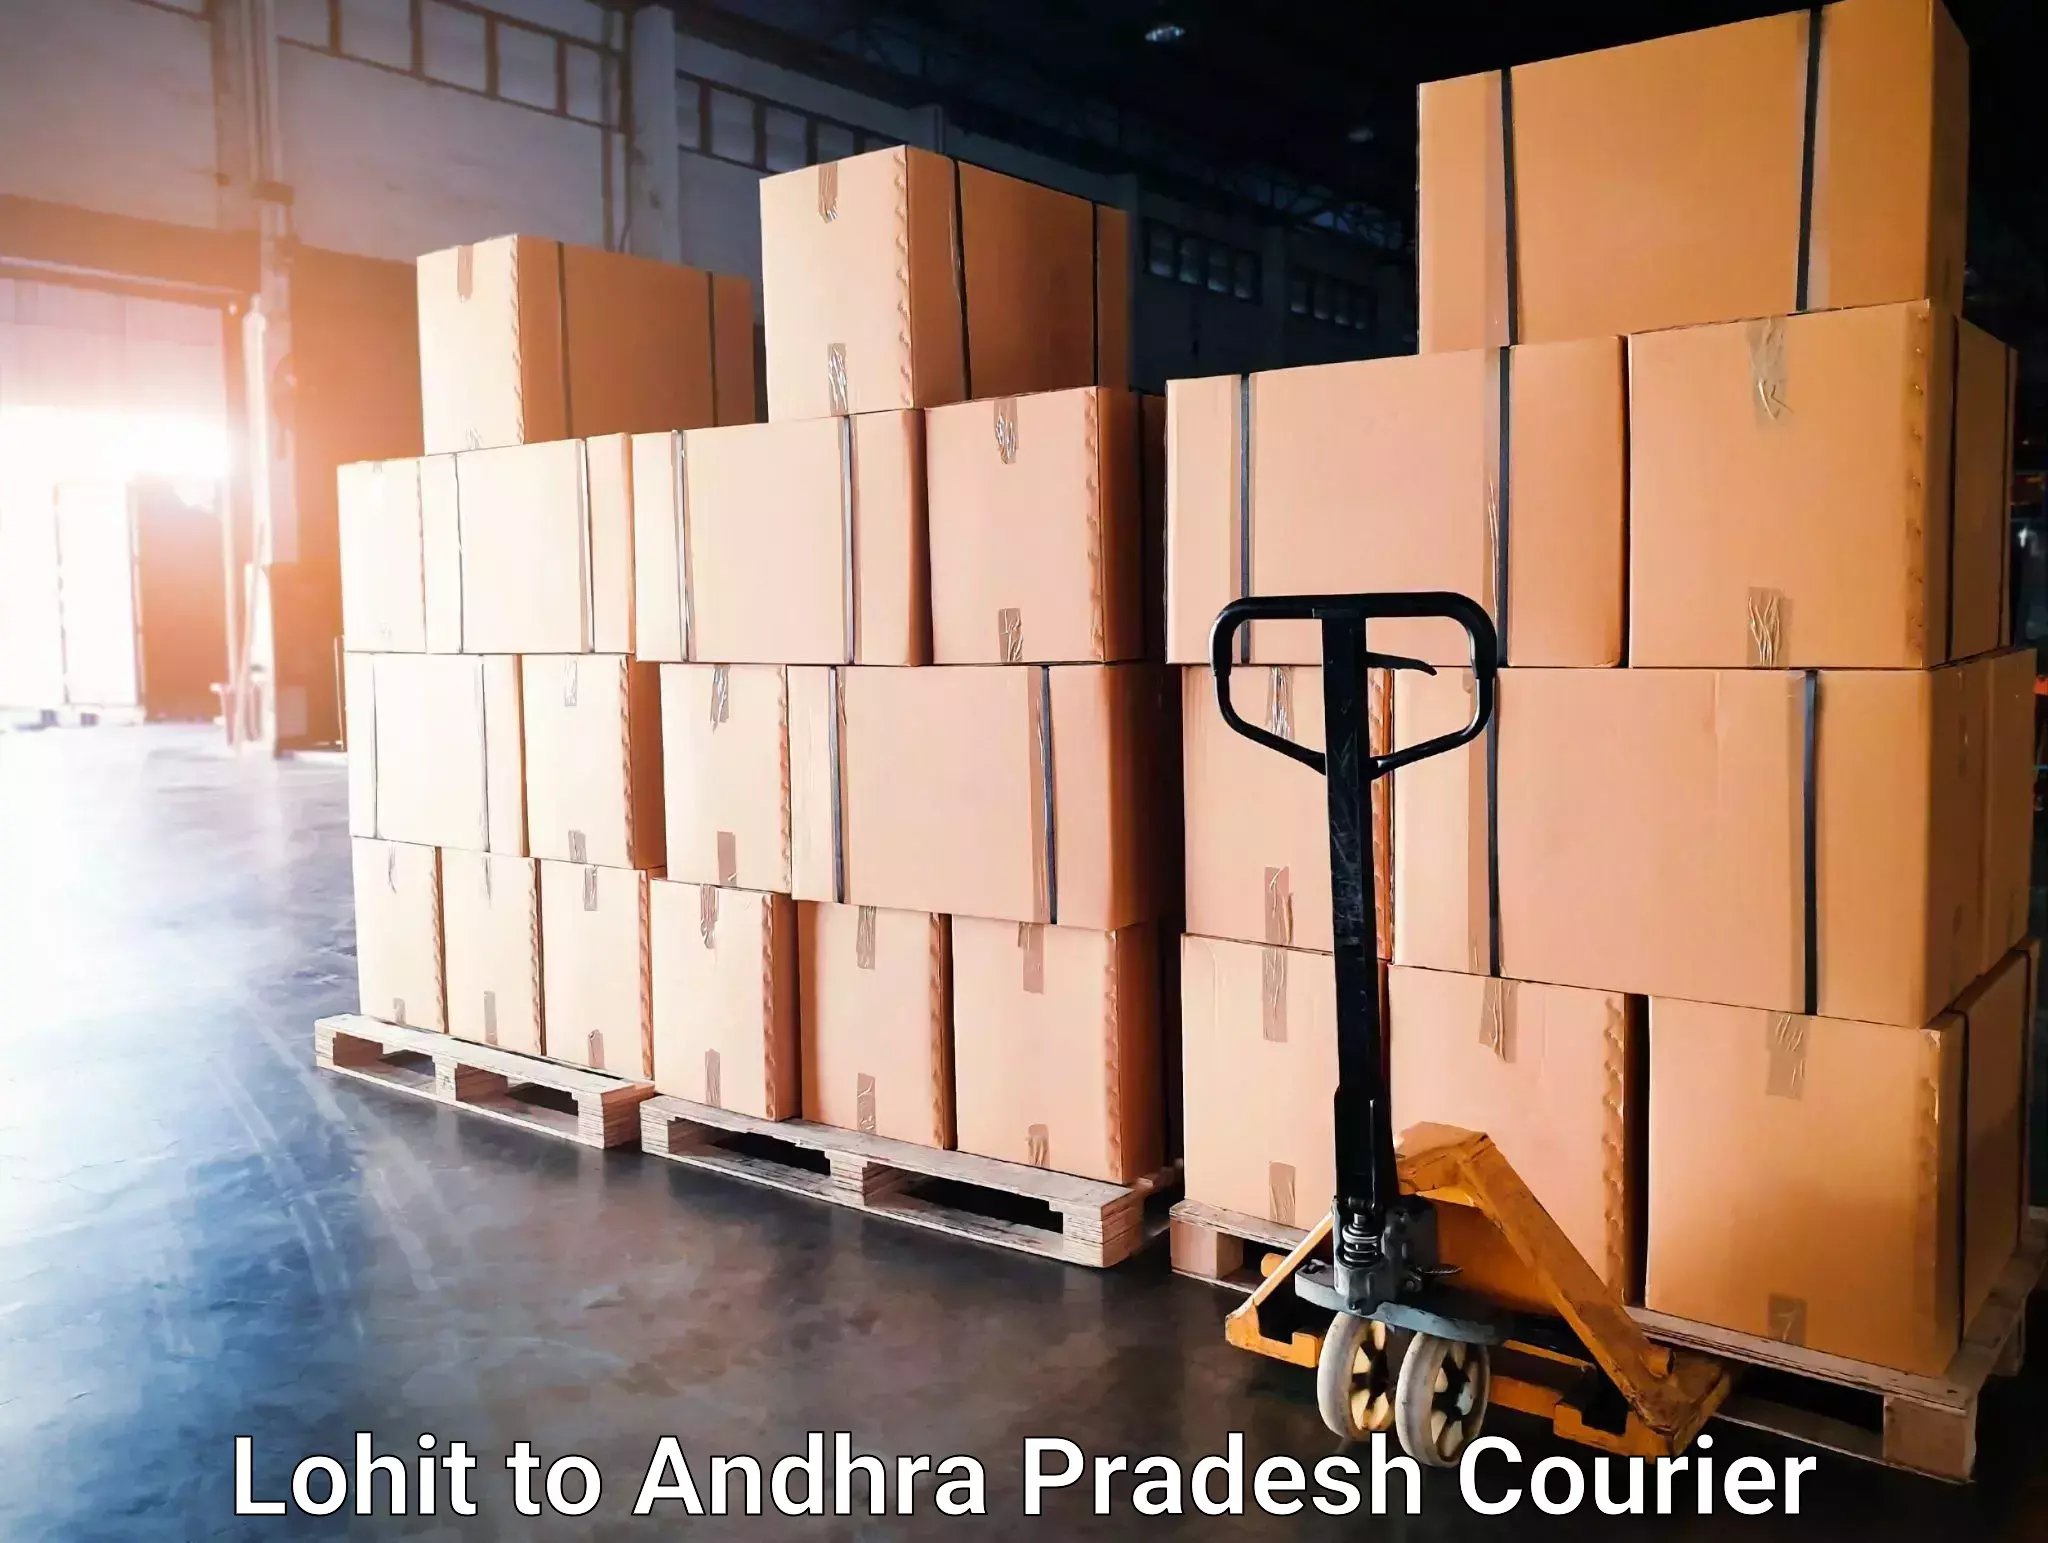 Courier service comparison Lohit to NIT Warangal